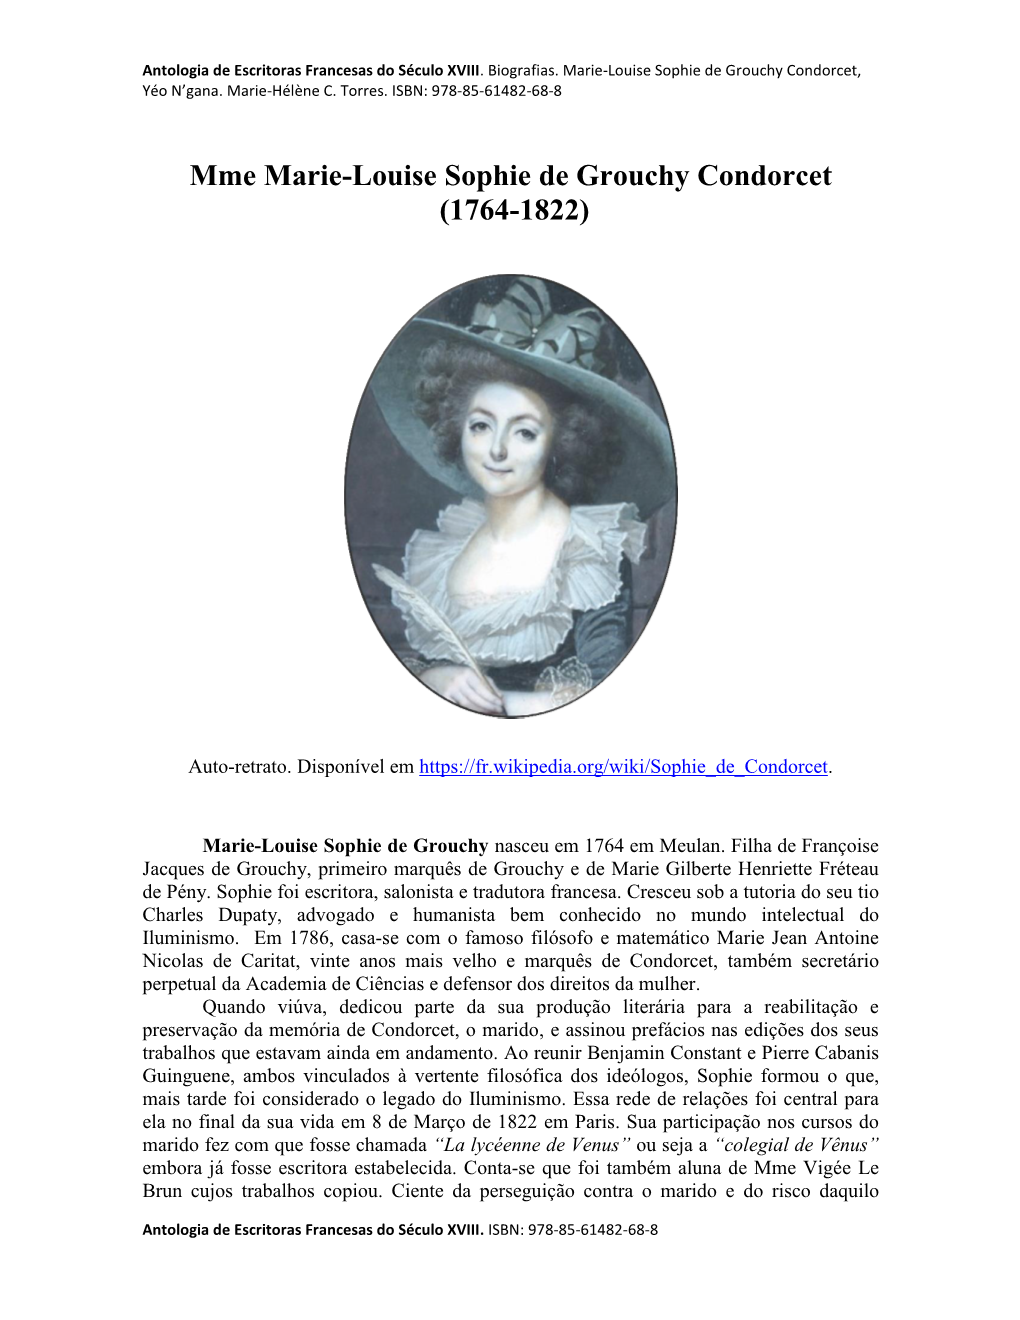 Mme Marie-Louise Sophie De Grouchy Condorcet (1764-1822)